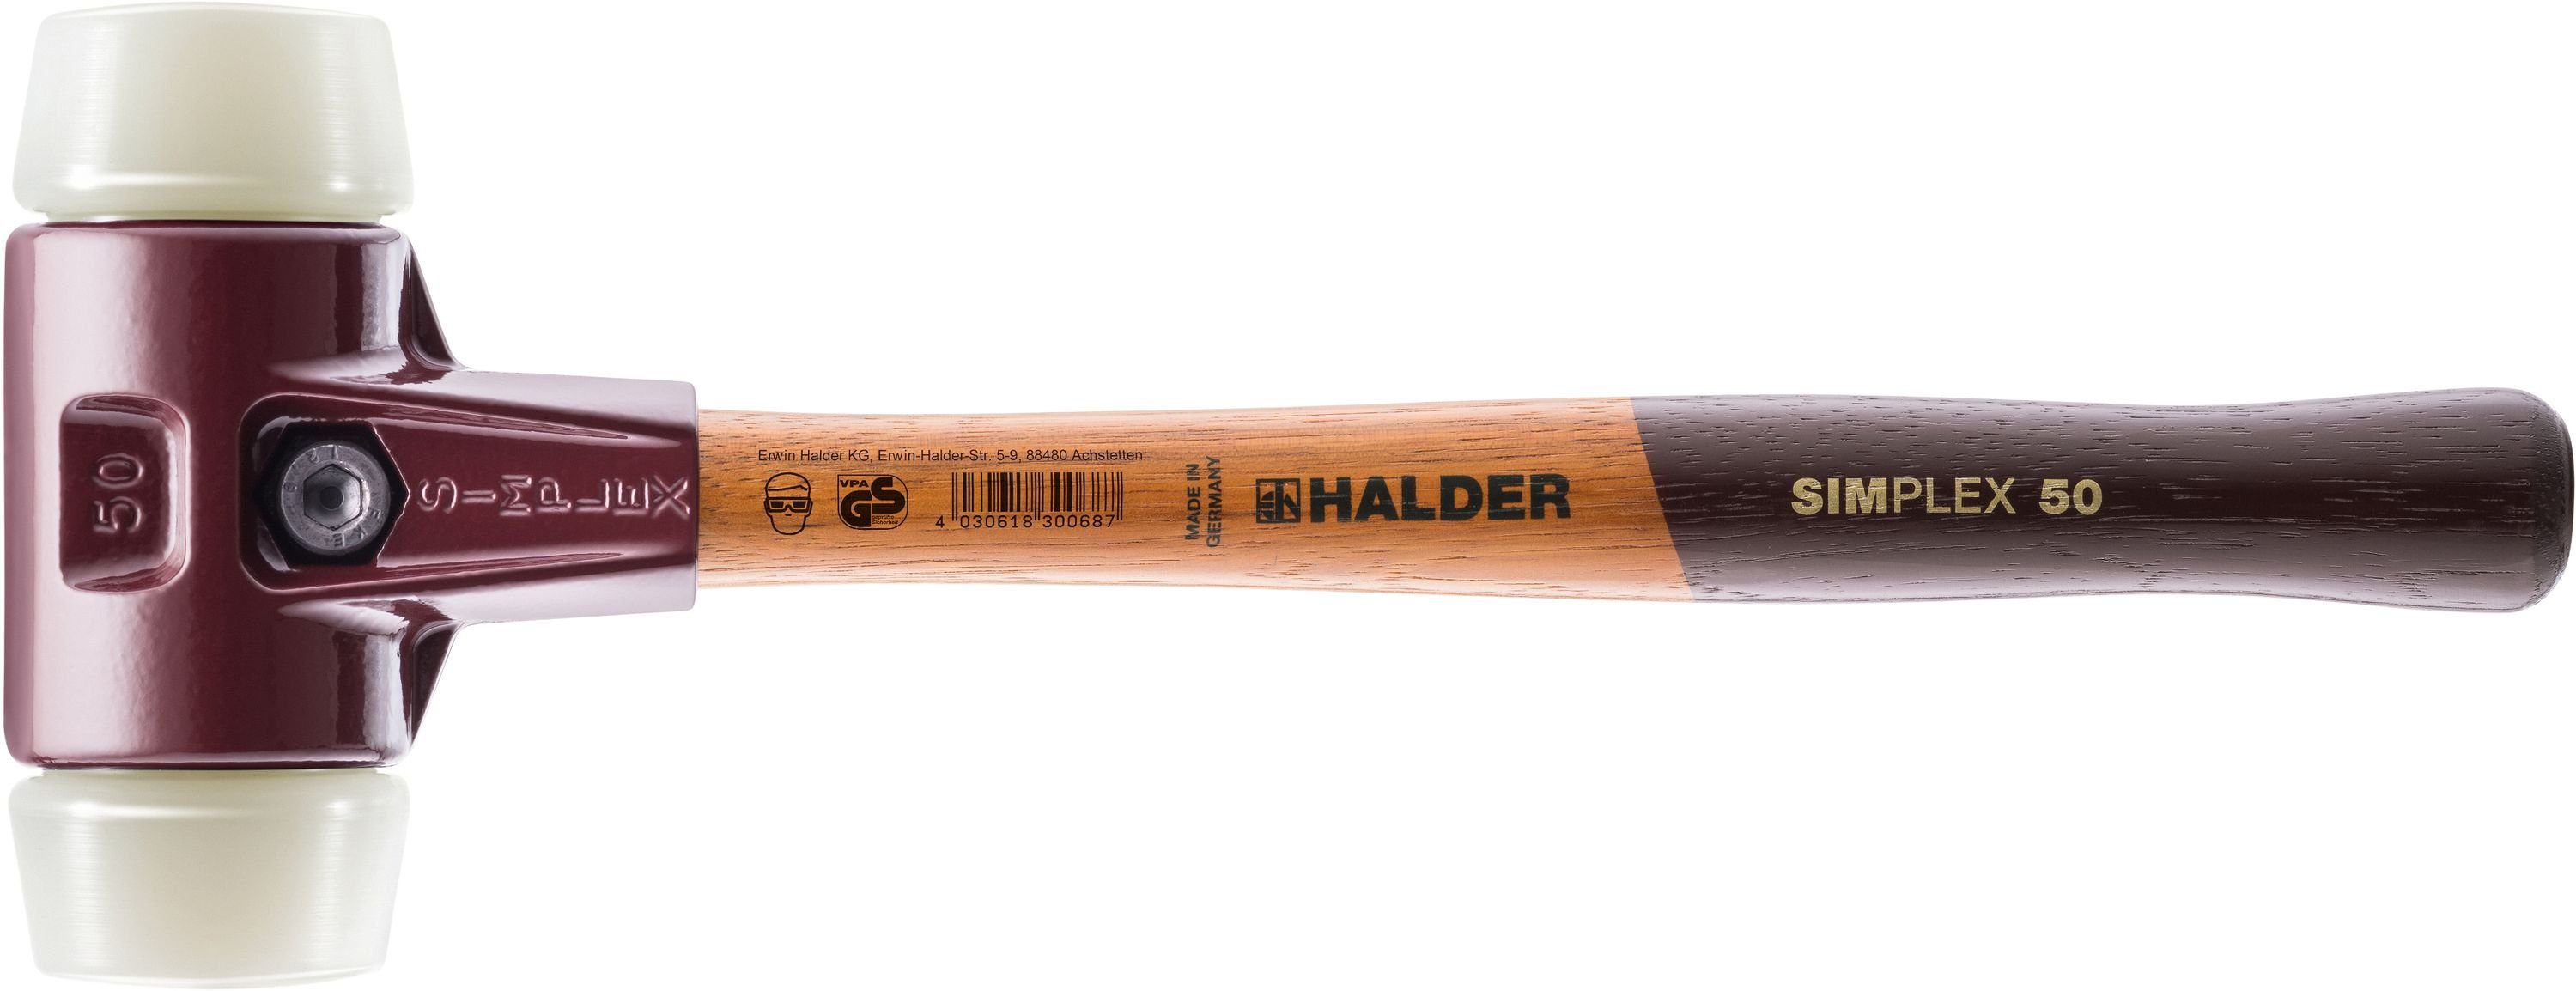 Halder KG Hammer SIMPLEX-Schonhämmer, mit Stahlgussgehäuse und Holzstiel Ø=30 mm